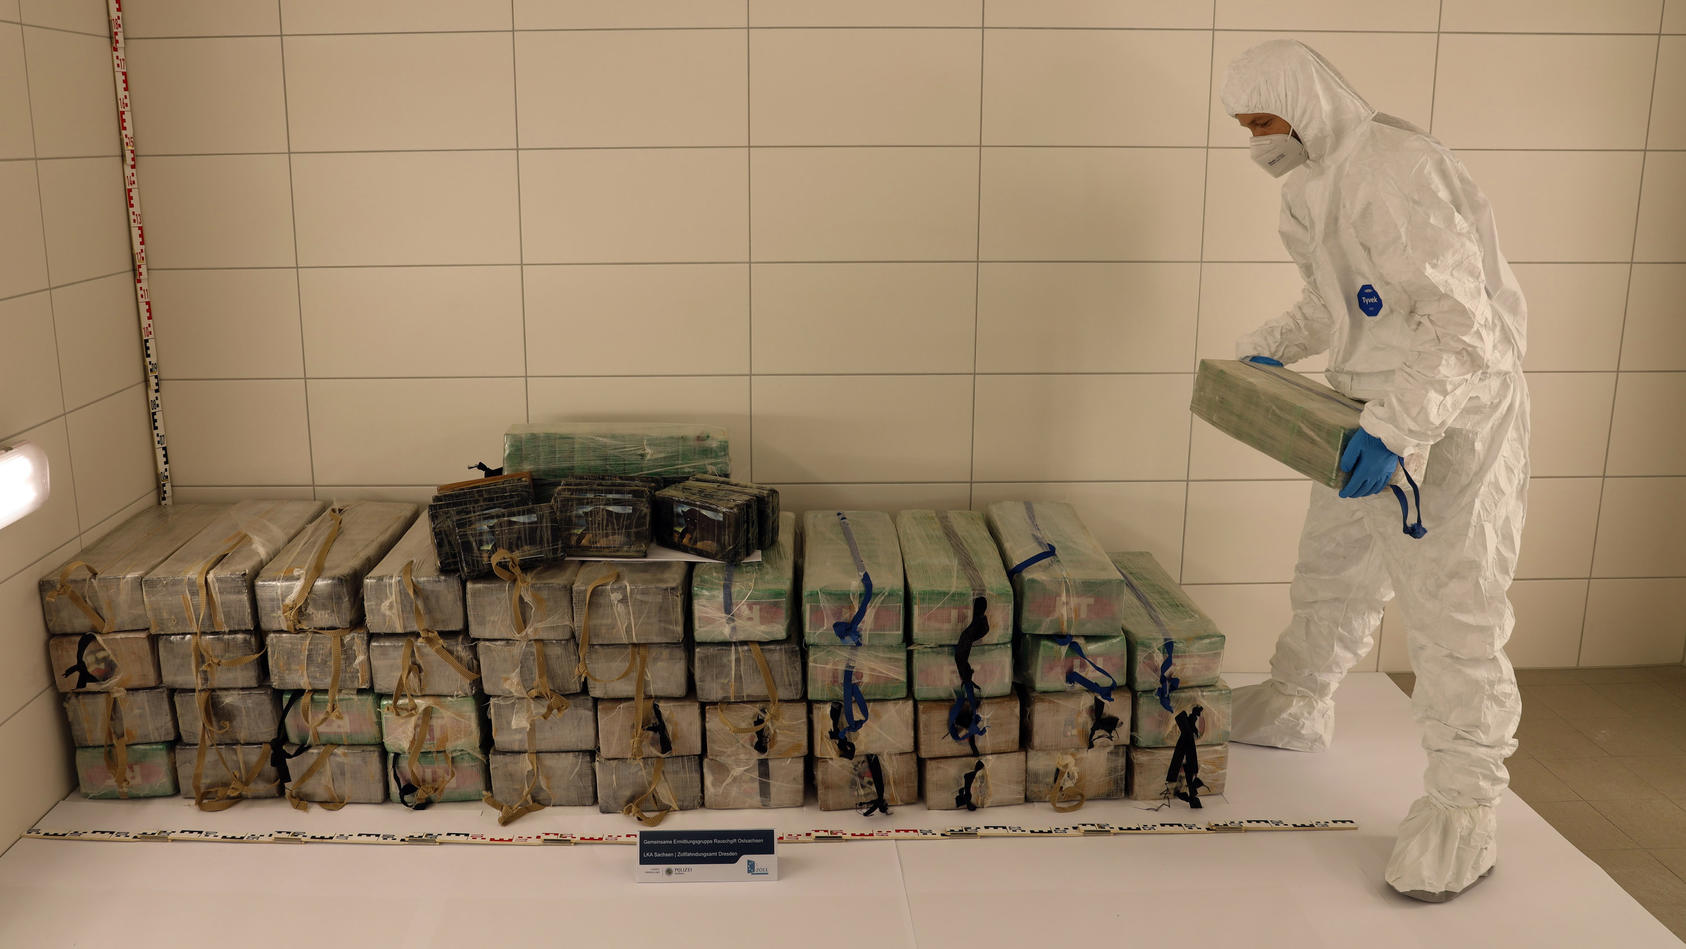 Größter Kokain-Fund in Sachsen: 700 Kilo in Zuckerlieferung versteckt